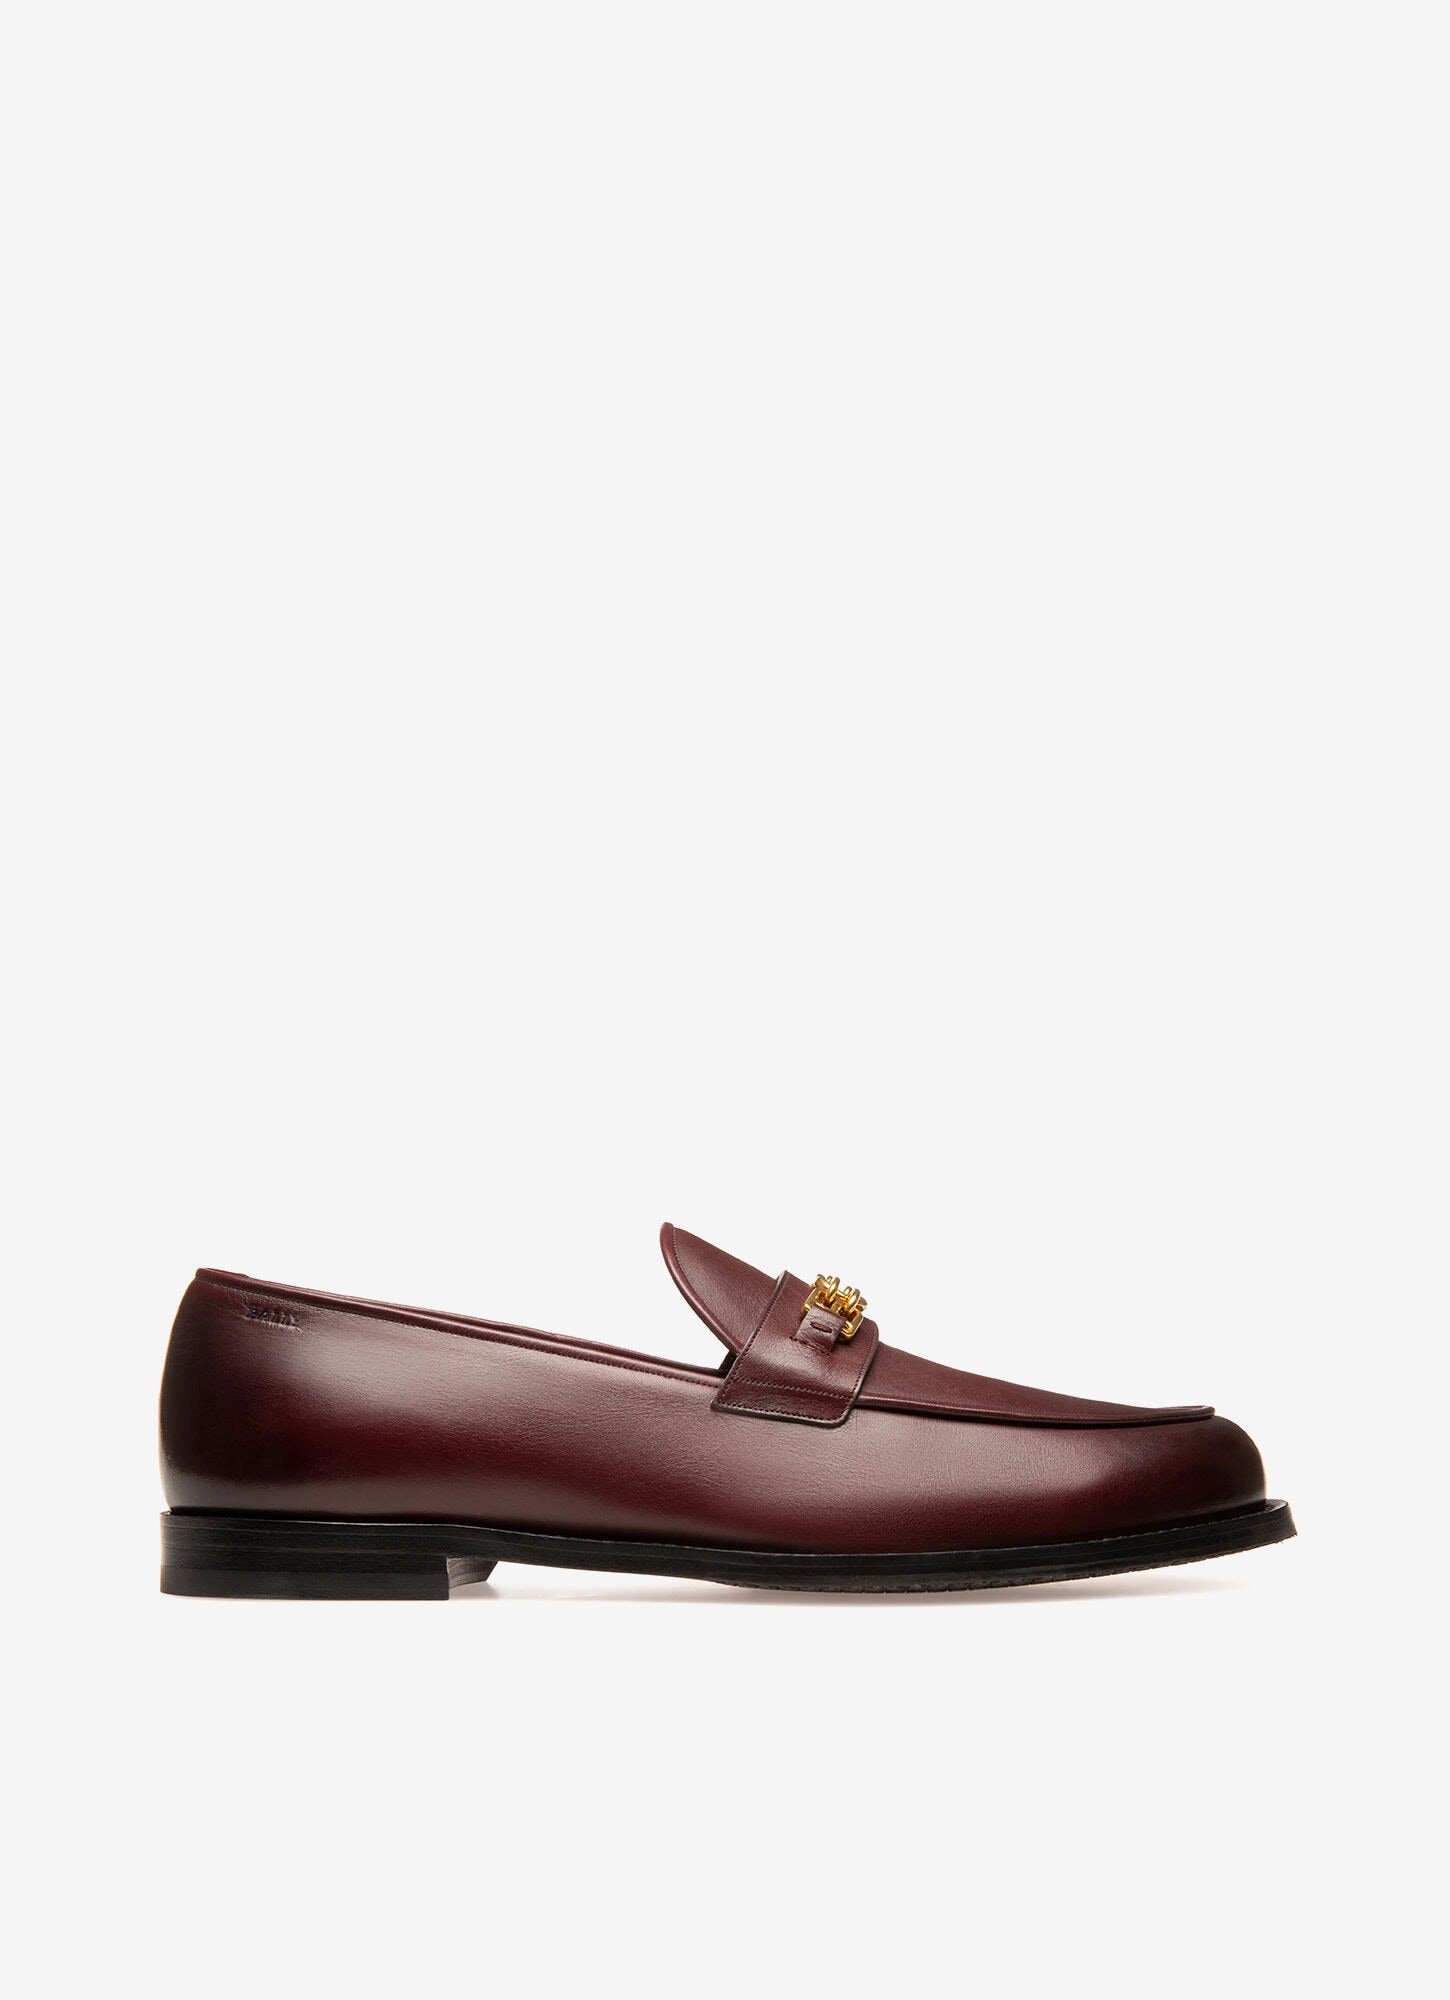 burgundy designer loafers